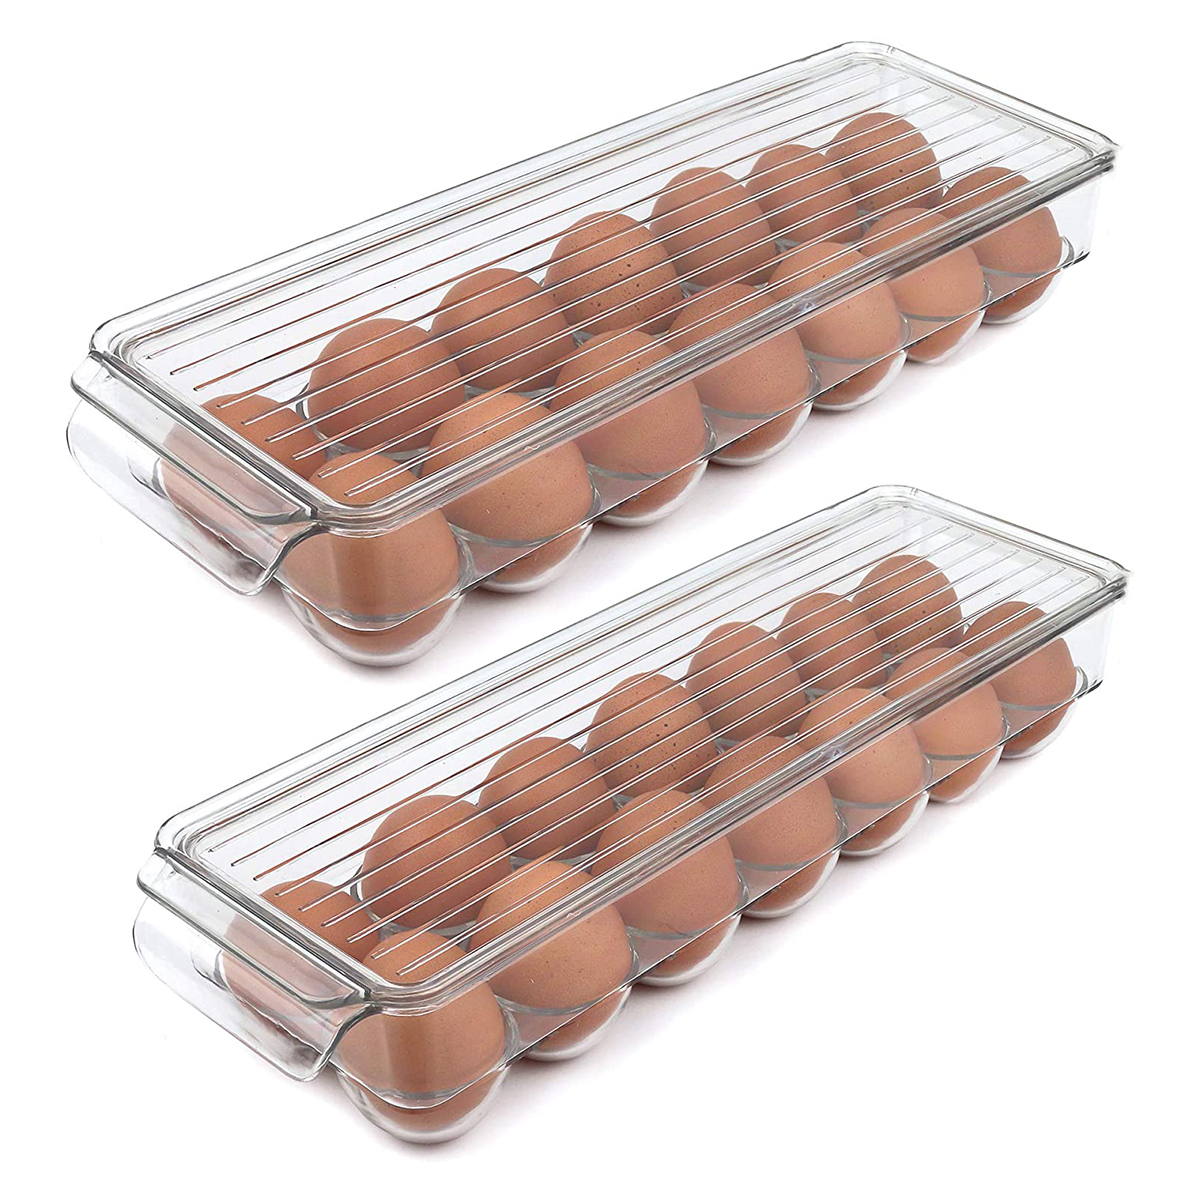 14 egg tray